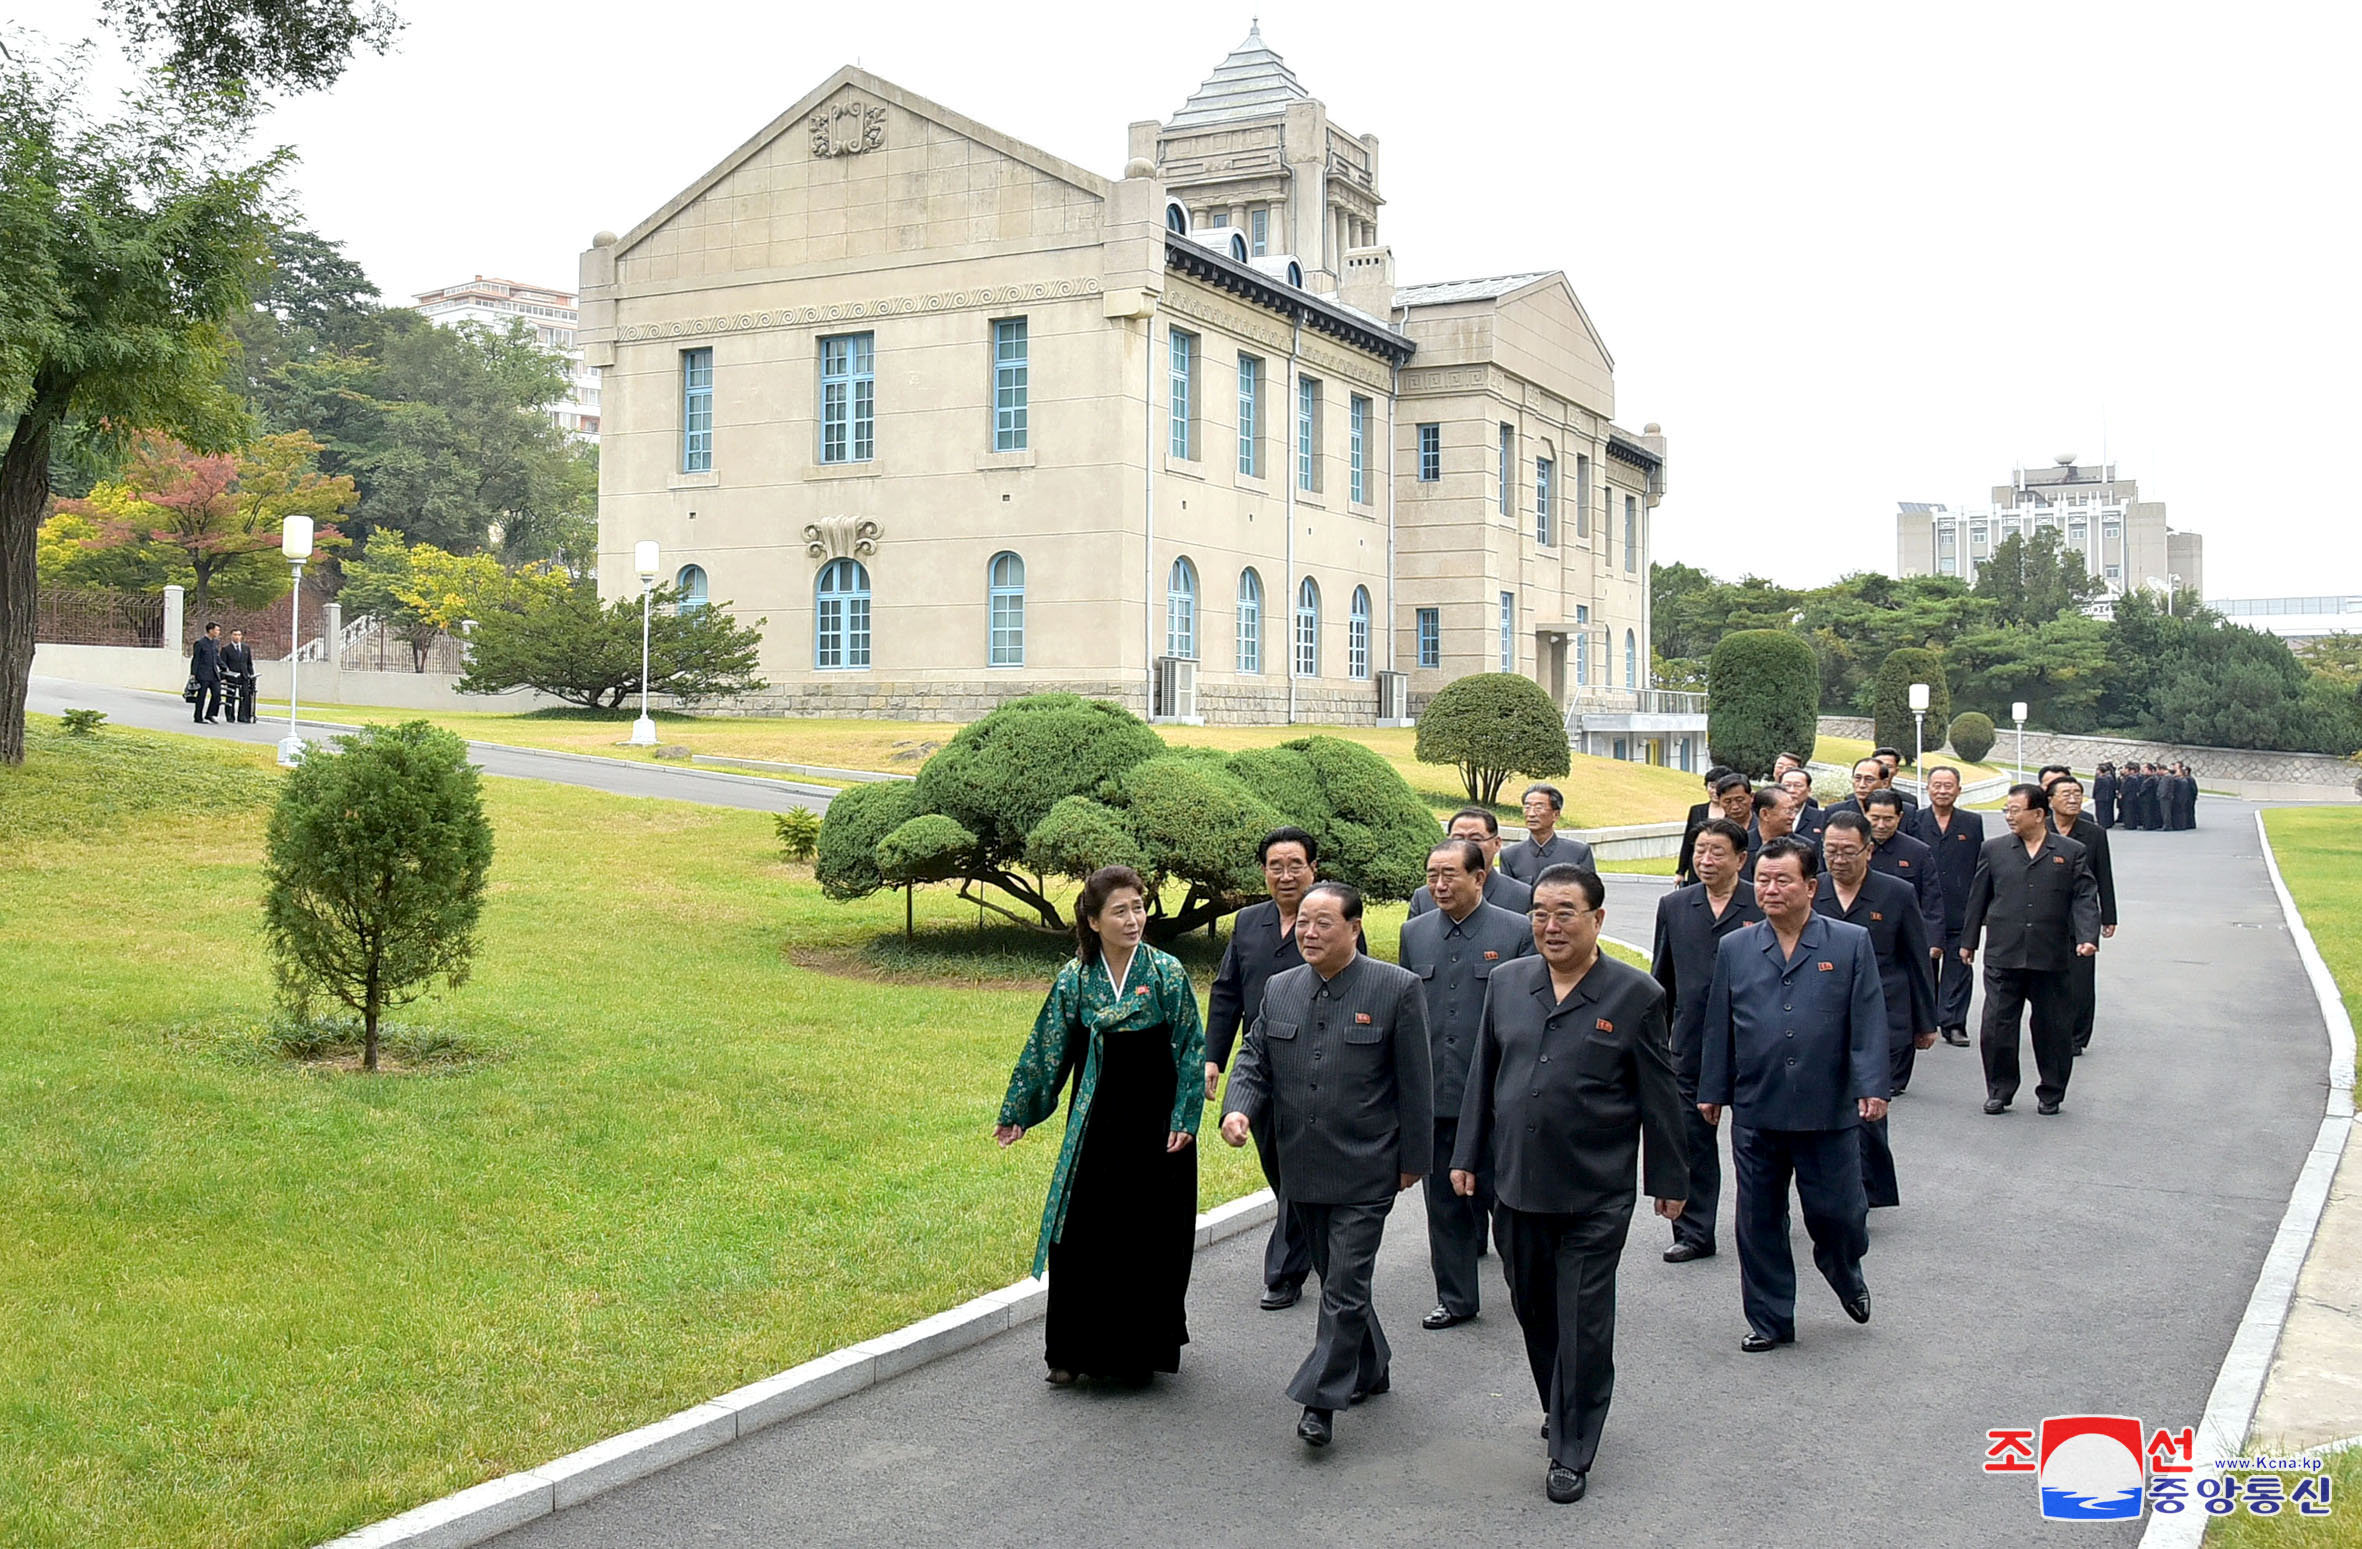 قيادات حزب العمال الكورى فى طريقهم لزيارة متحف الحزب فى ذكرى تأسيسه